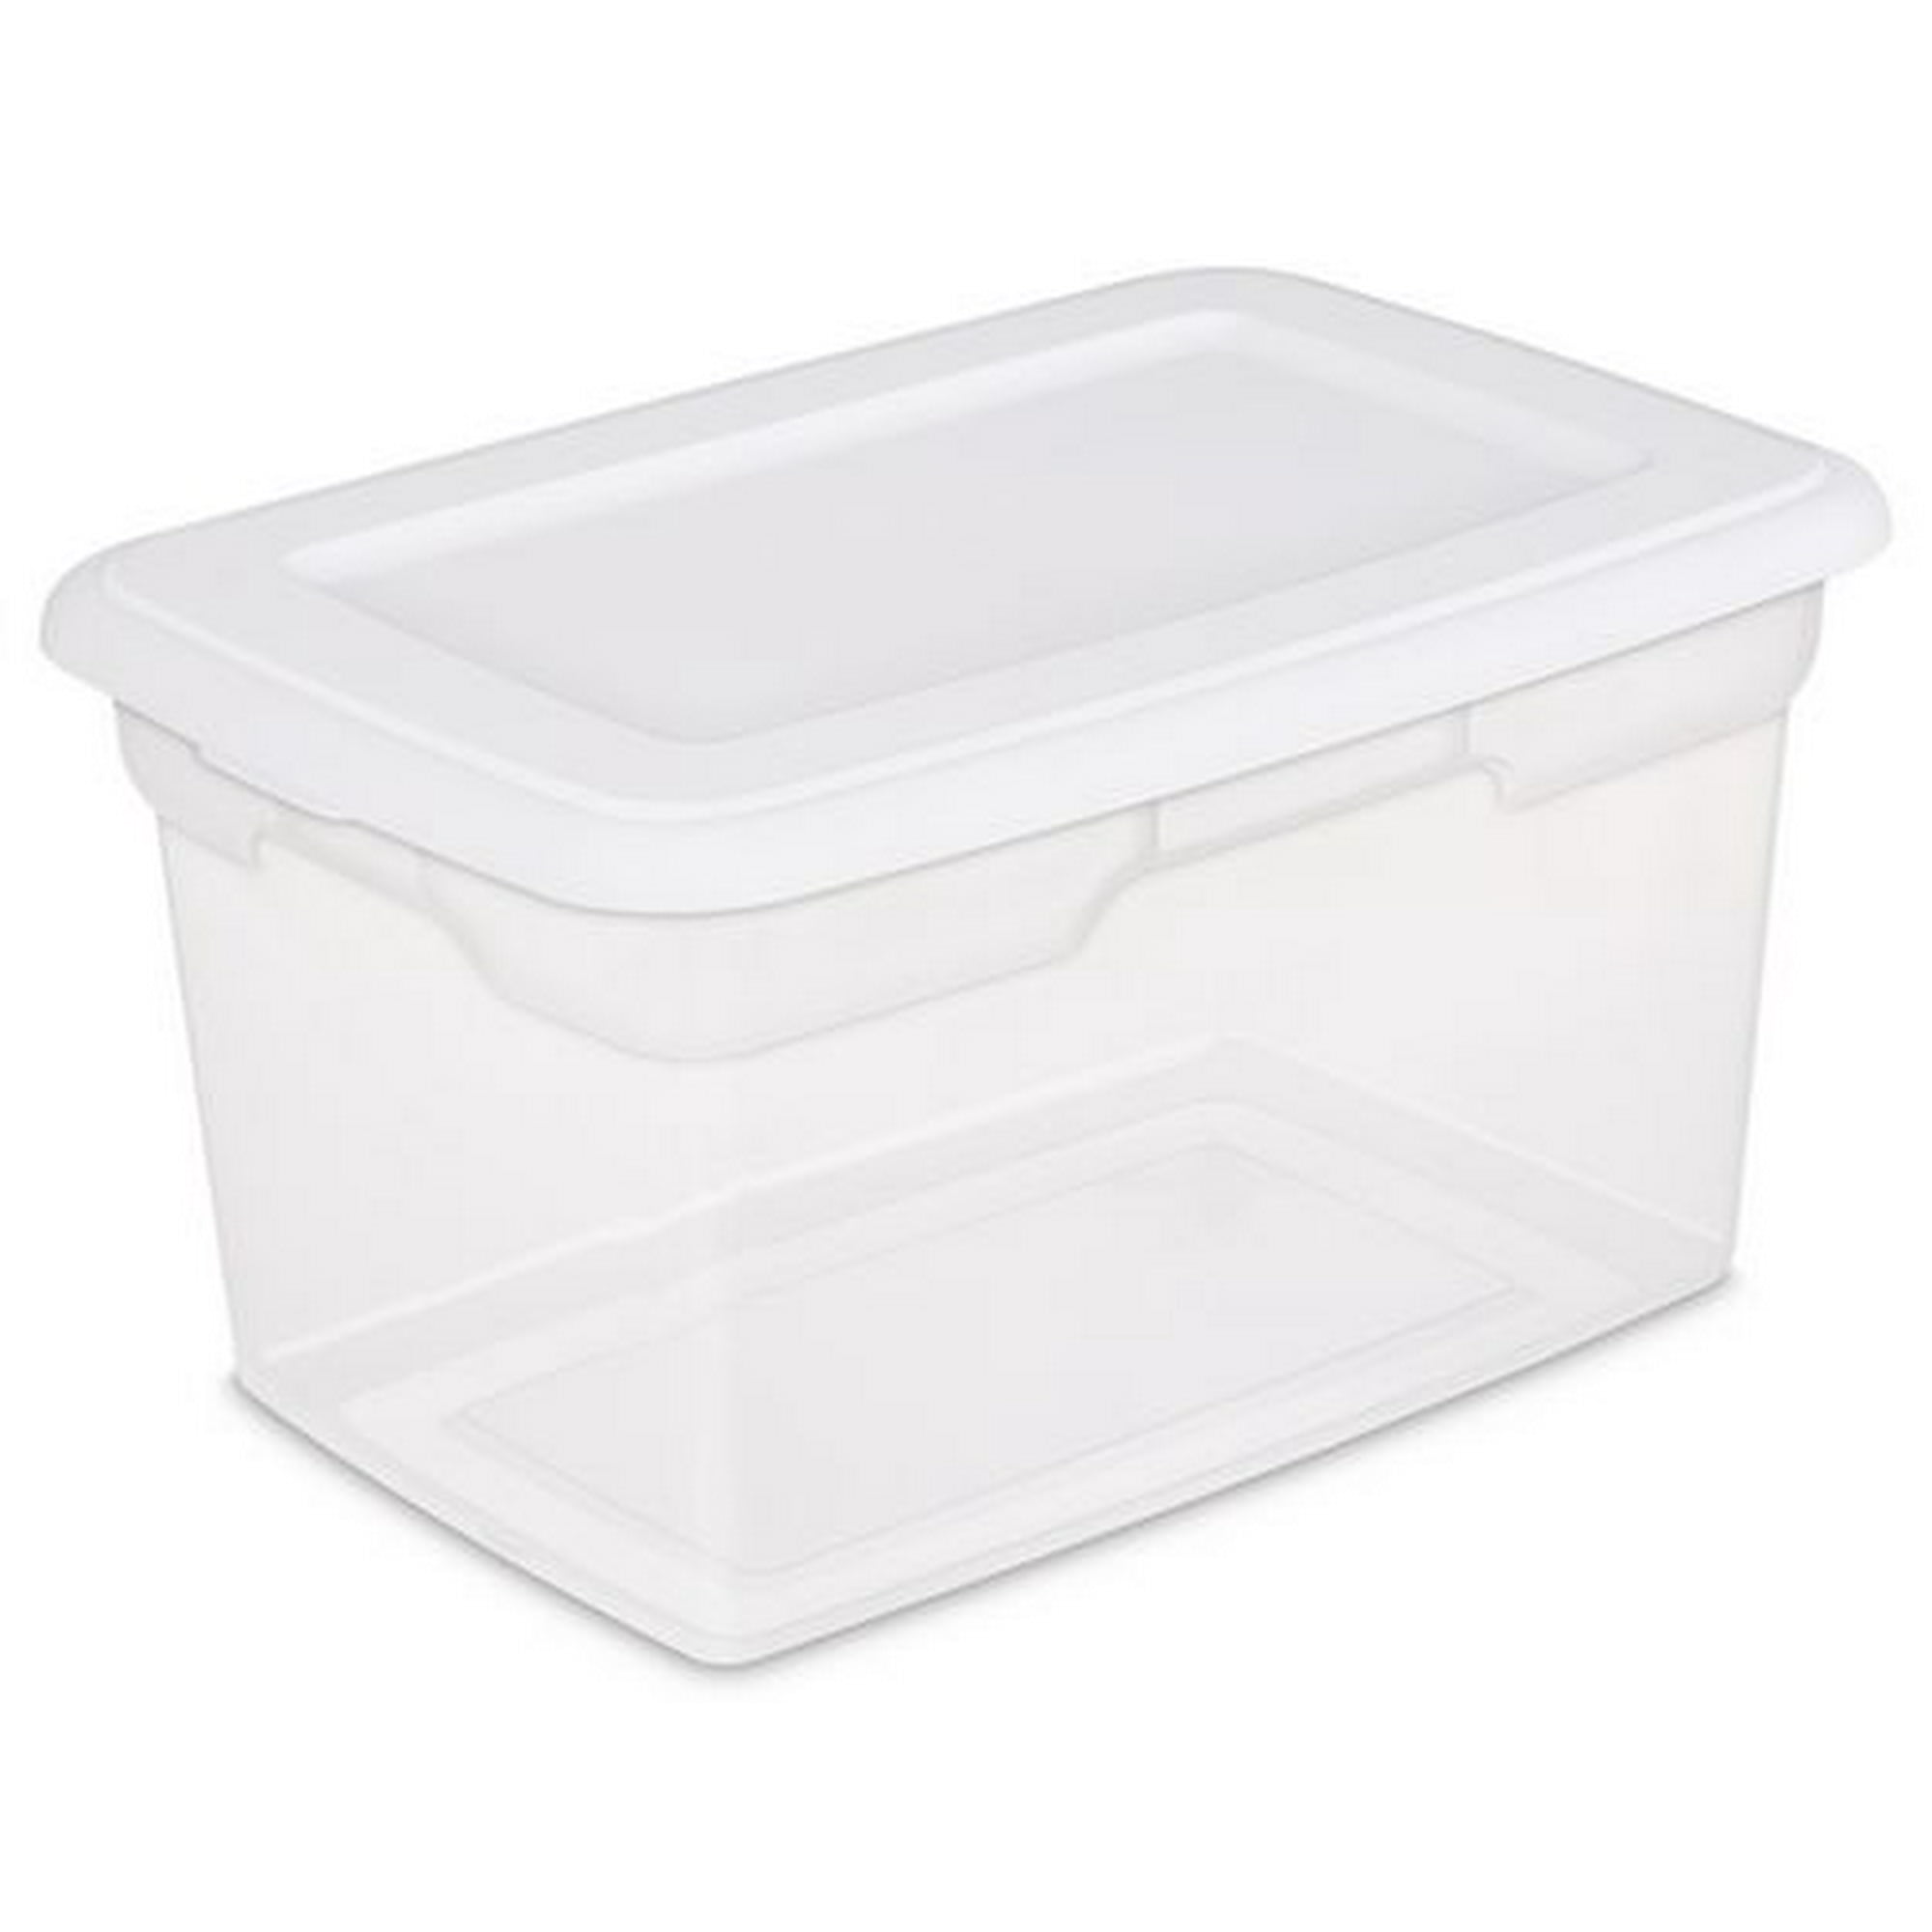 Sterilite 18.9 Liter White Storage Box, 18.9 Liter 